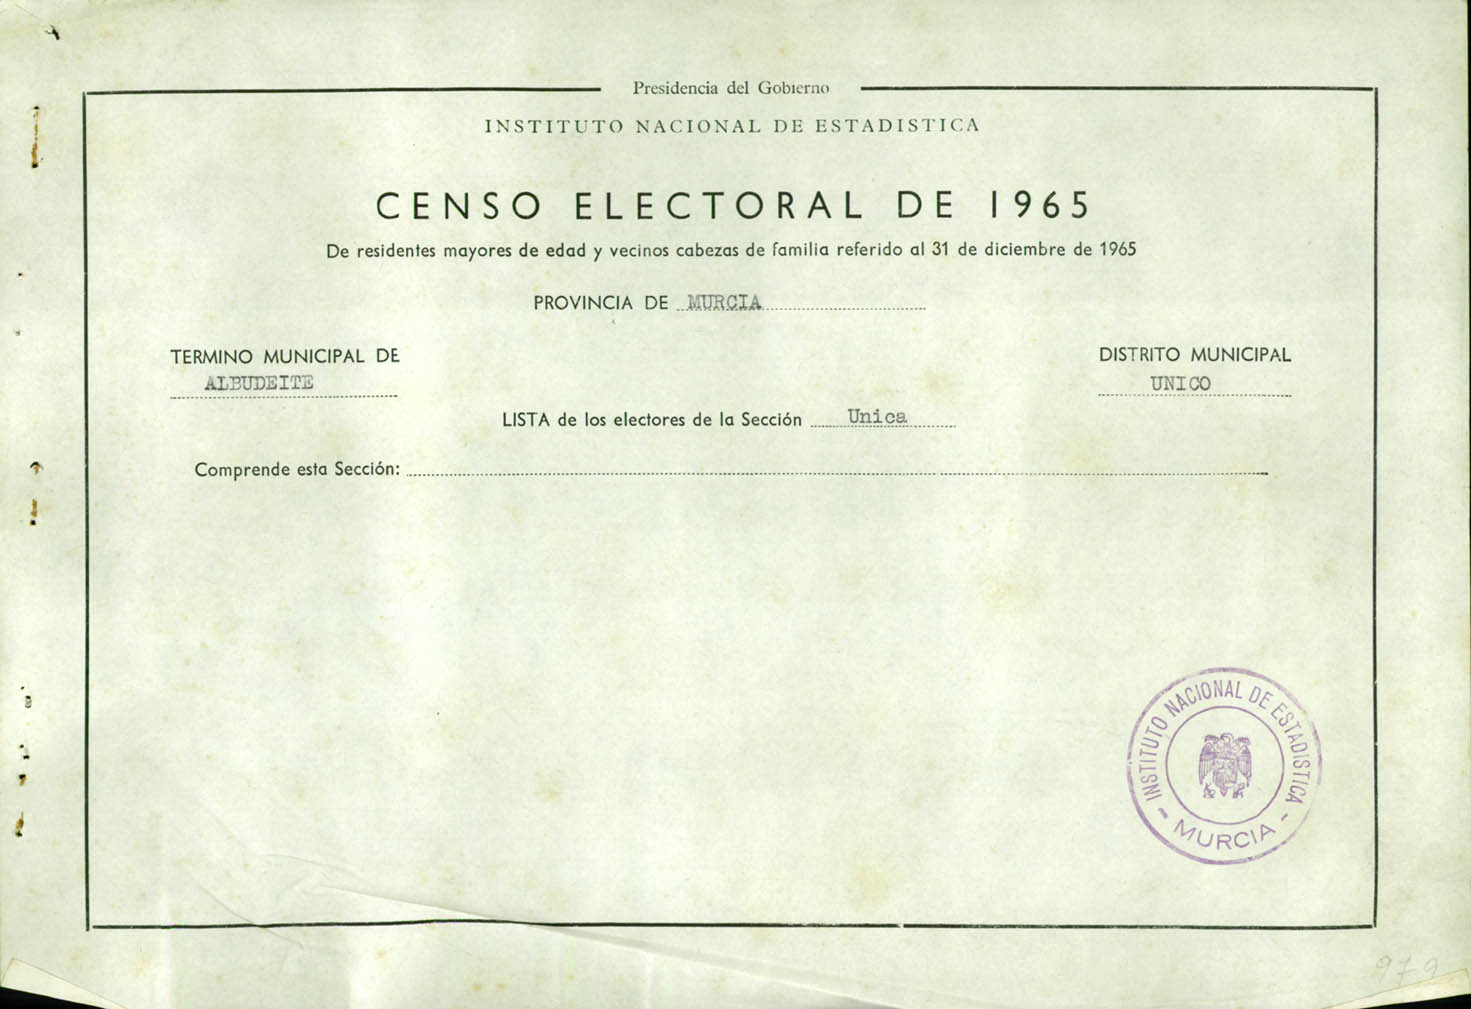 Censo electoral provincial de 1965: listas definitivas de Albudeite, Distrito único, sección 1º.